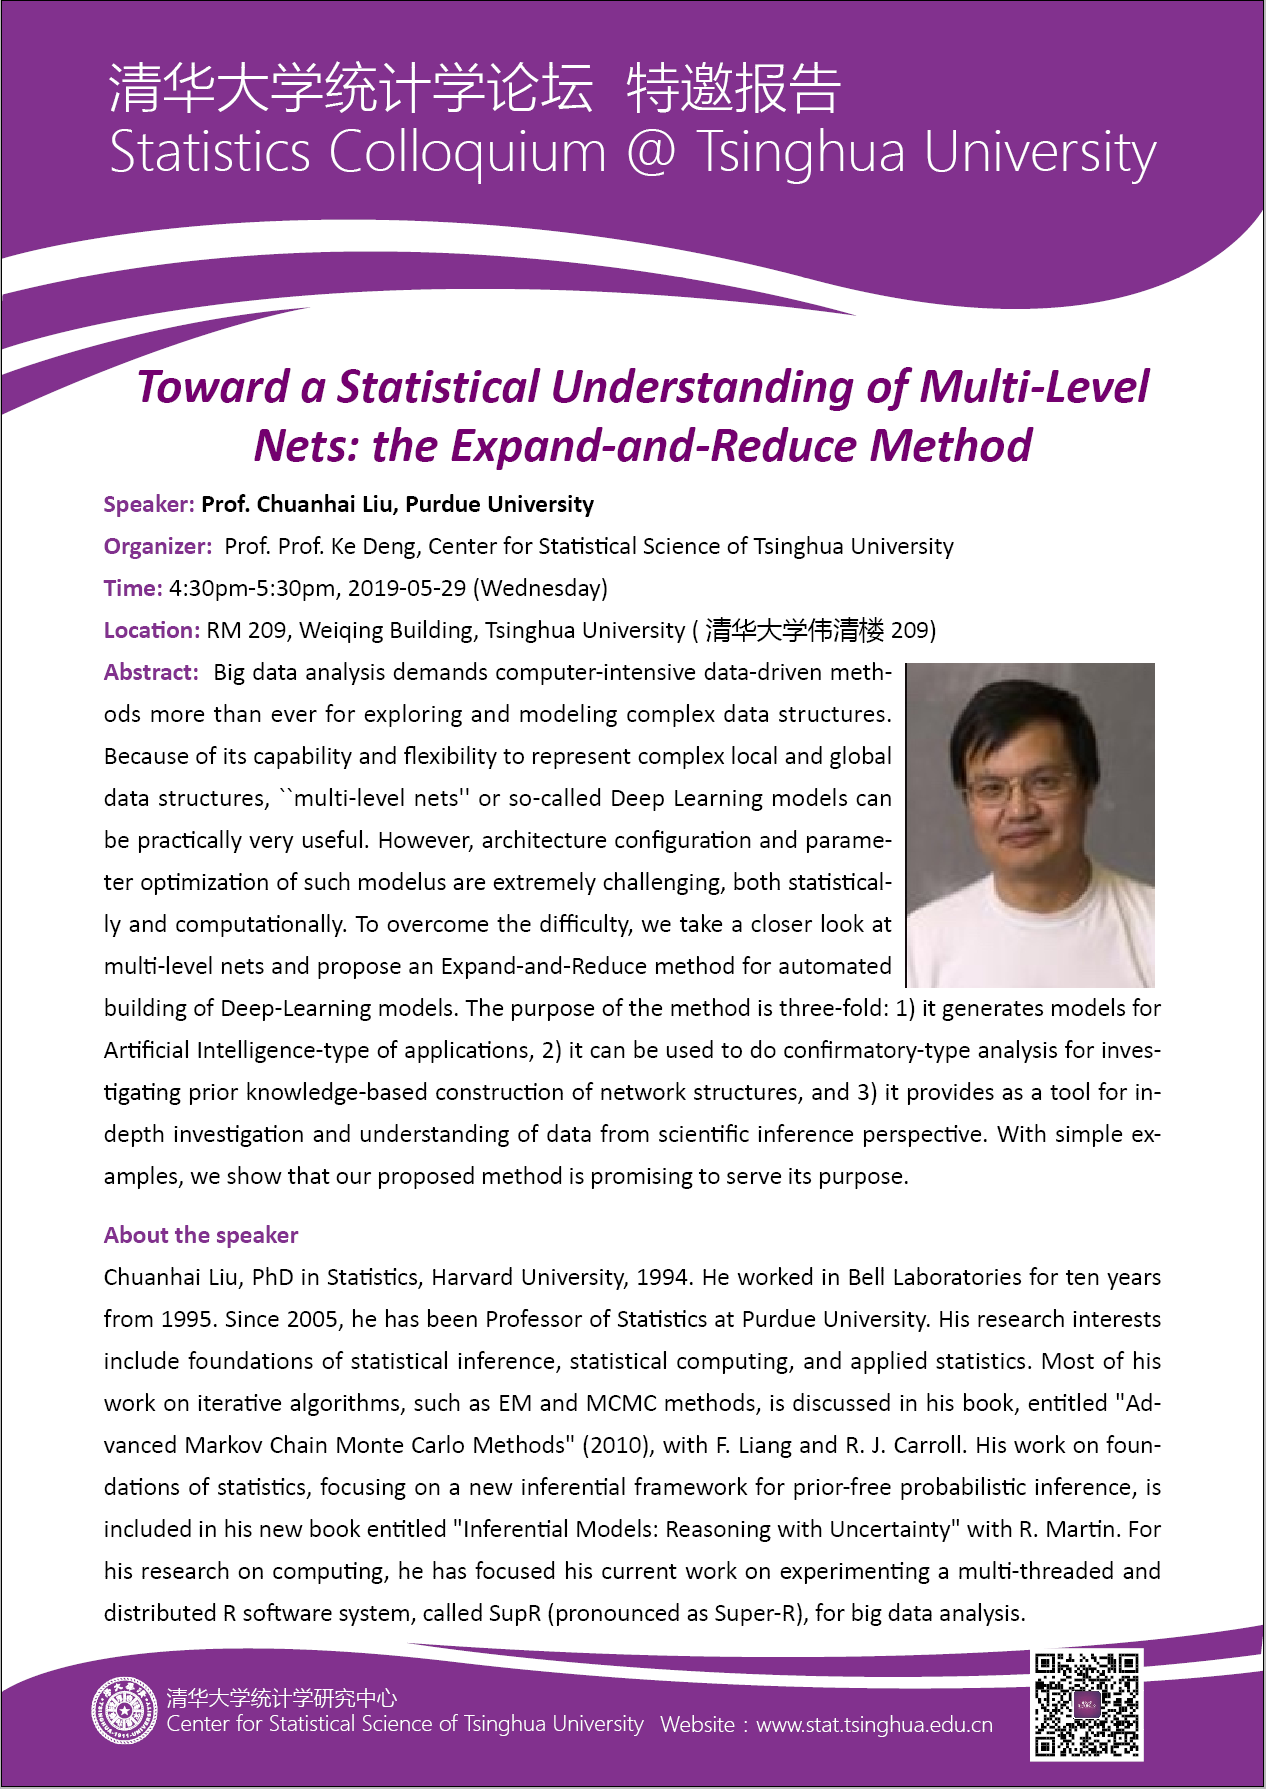 【统计学论坛】Toward a Statistical Understanding of Multi-Level Nets: the Expand-and-Reduce Method